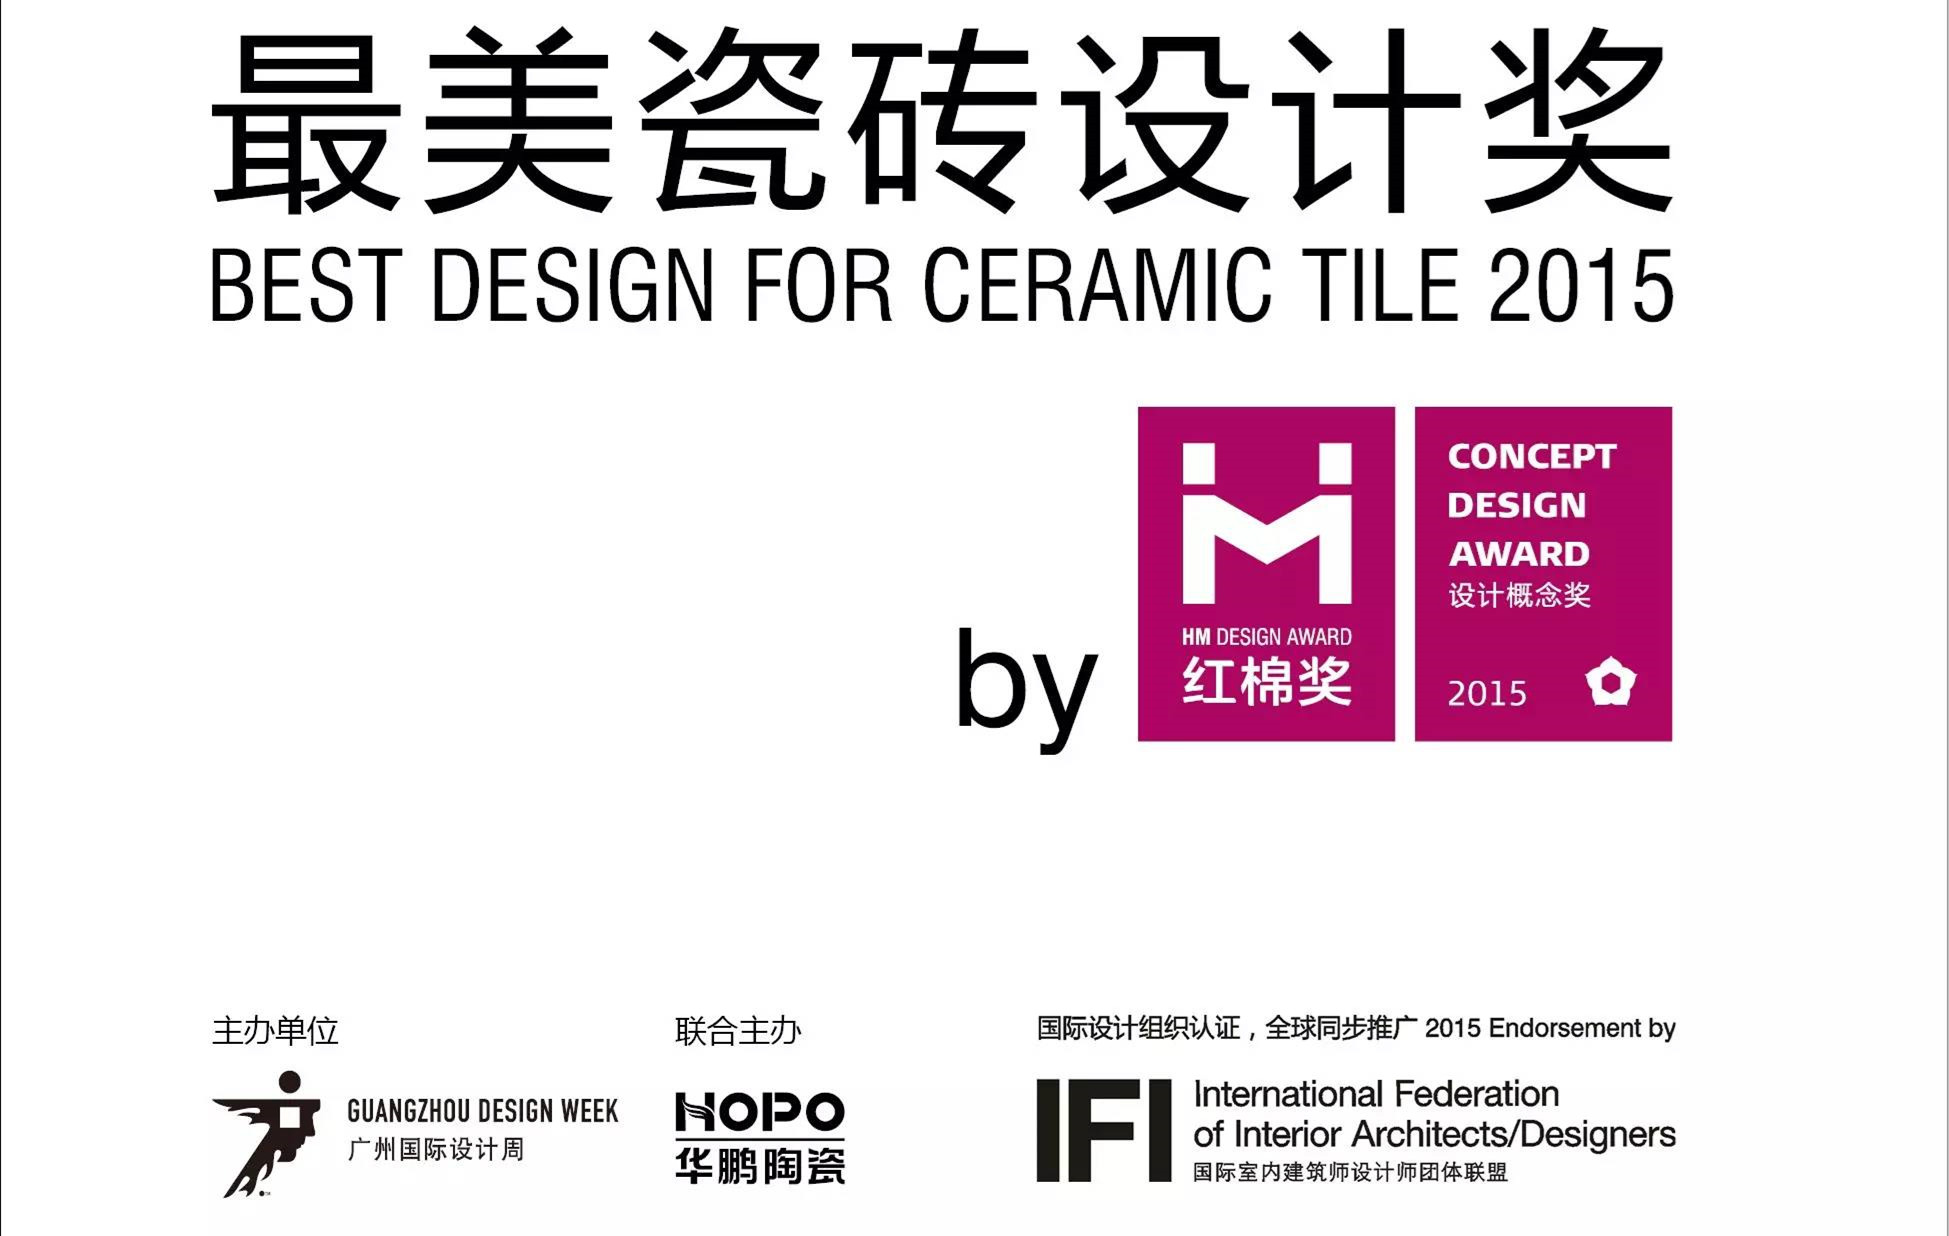 【重磅】2015紅棉獎首個設計概念獎——“最美瓷磚設計獎”啓動參評！